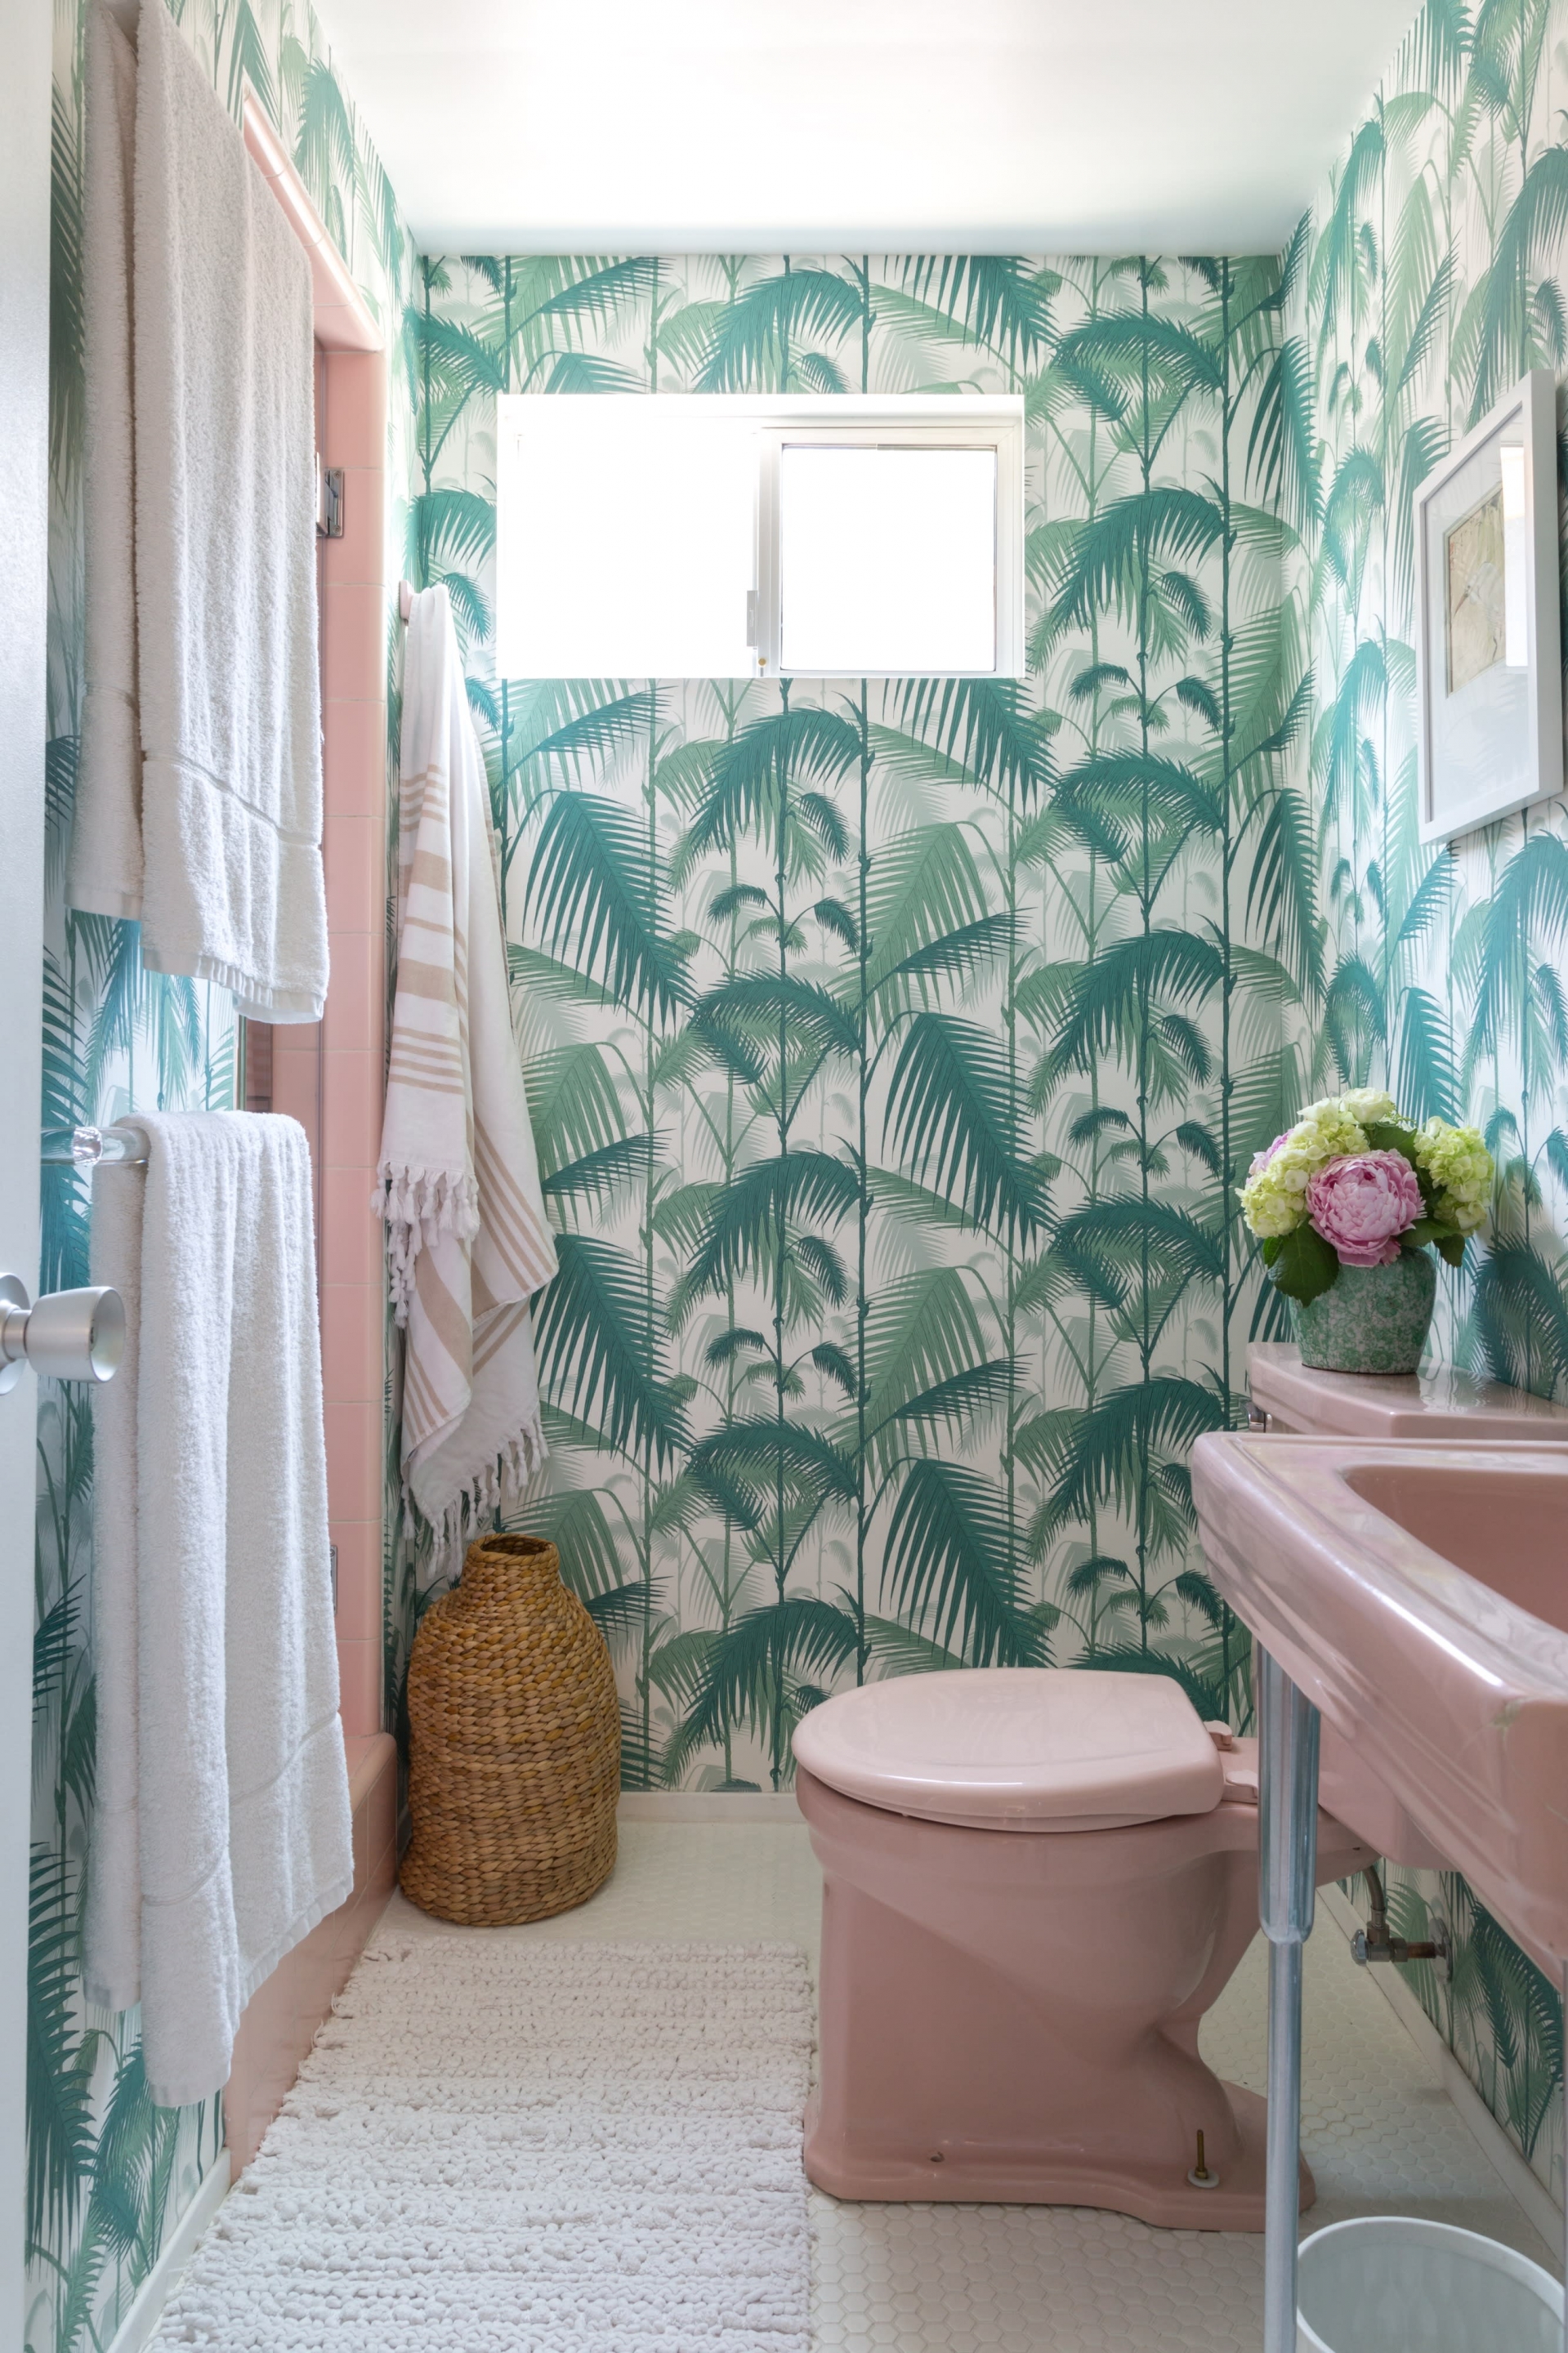 Hình ảnh thực vật miền nhiệt đới trên giấy dán tường sẽ giúp buồng tắm nhỏ sáng bừng, hơn nữa lại dễ dàng thay mới theo mùa. 